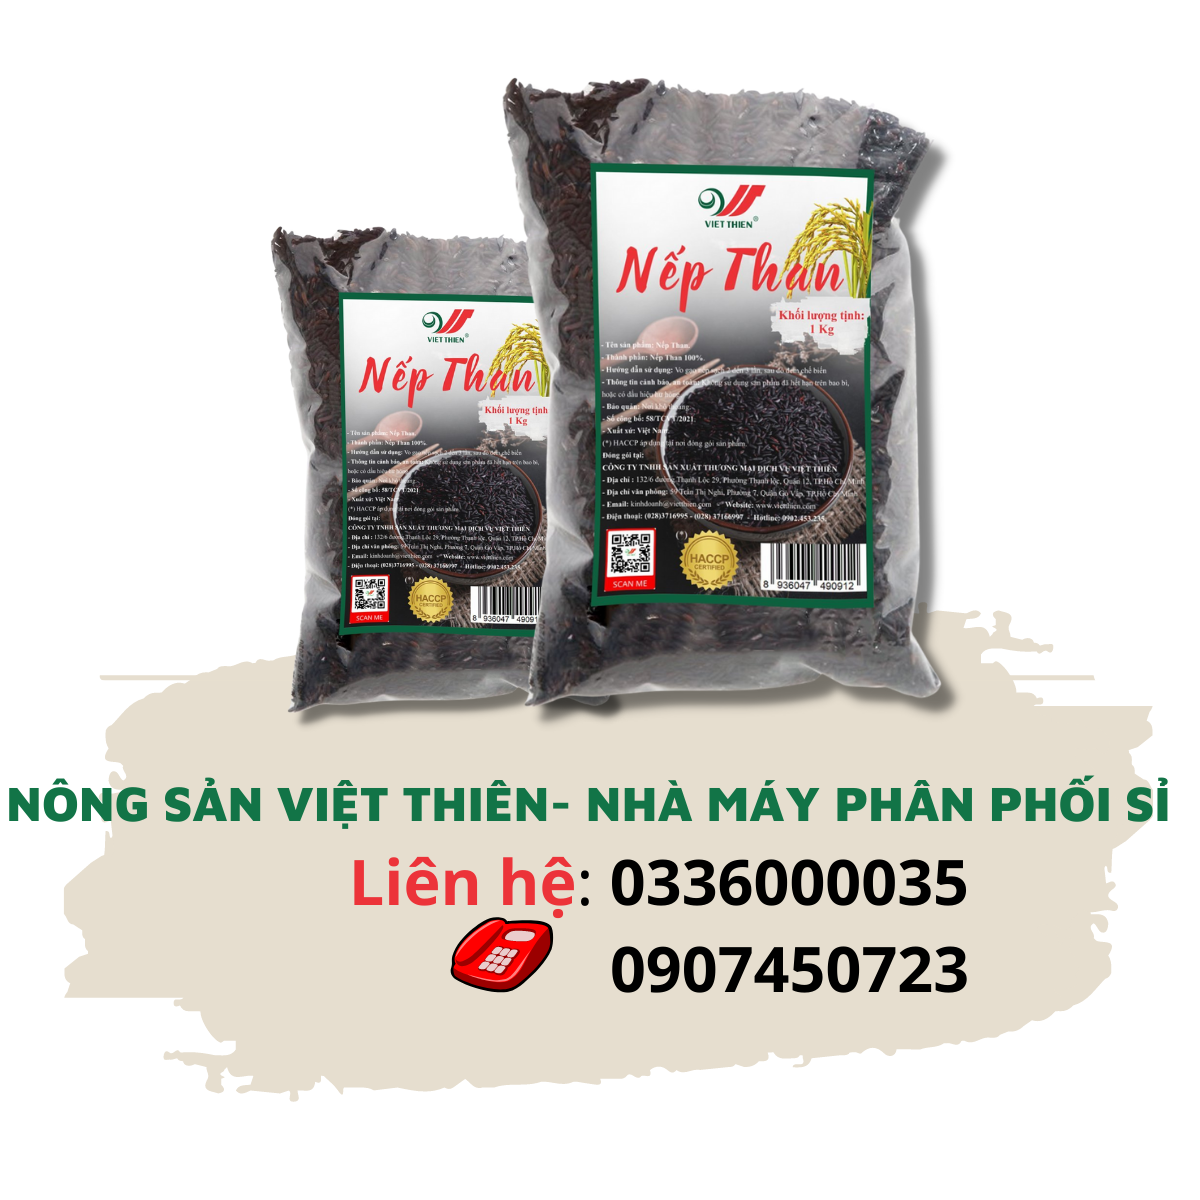 Nếp Than Việt Thiên 1kg, nhà máy sản xuất và phân phối nông sản Việt Thiên, giá rẻ